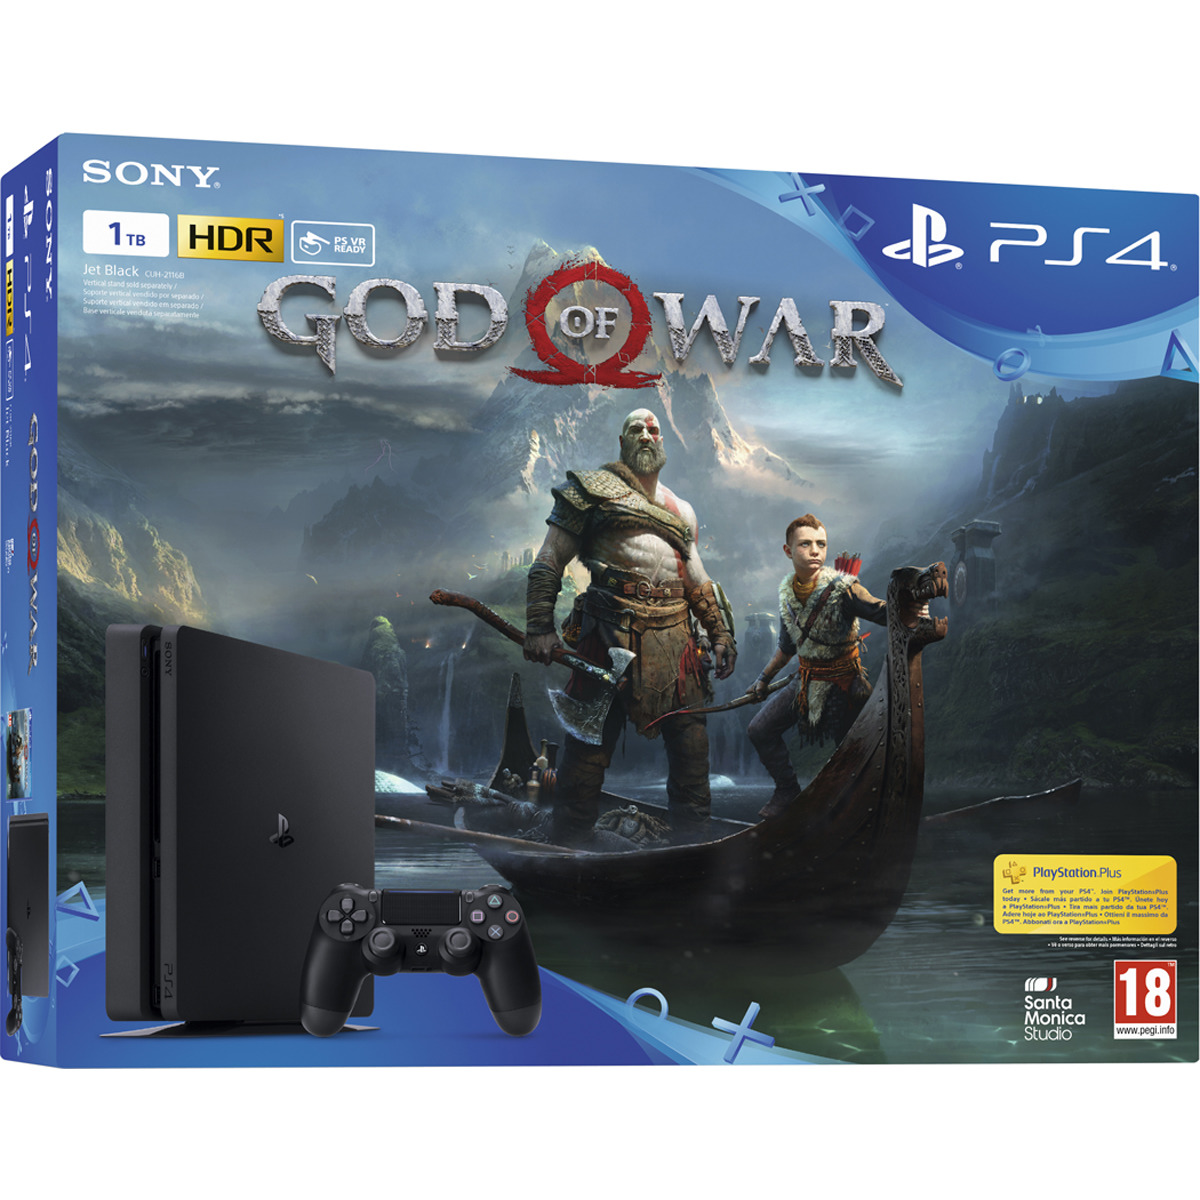 PlayStation presenta la guía de compra de God of War